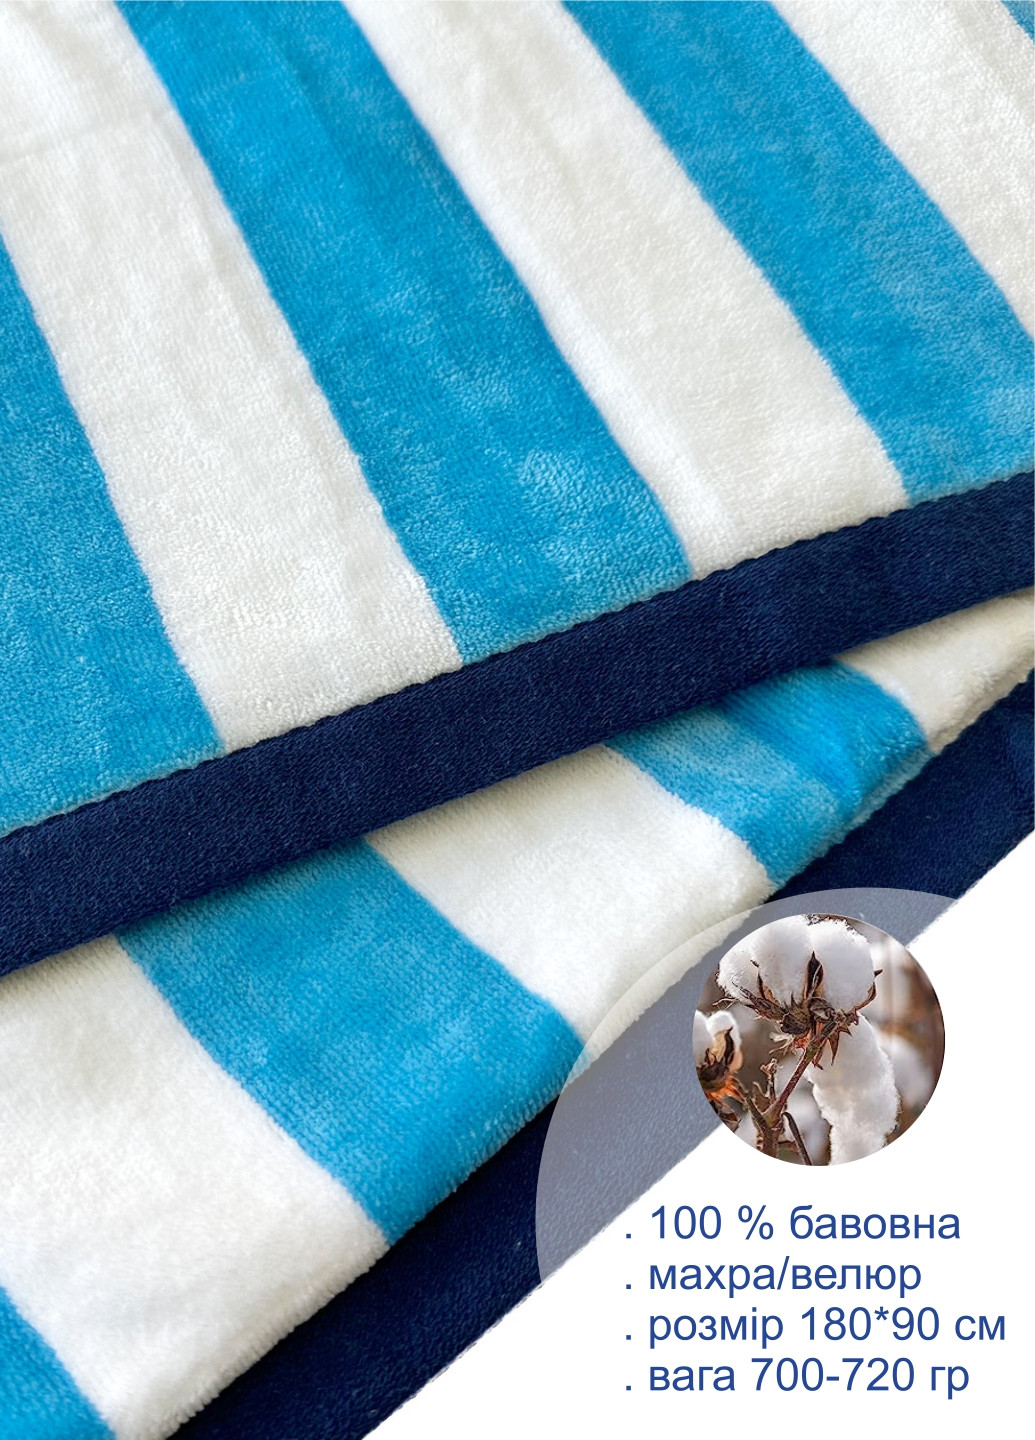 Lovely Svi полотенце xxl (90 на180 см) - хлопок велюр/махра - банные пляжные в басейн бело - синий полоска синий производство - Китай